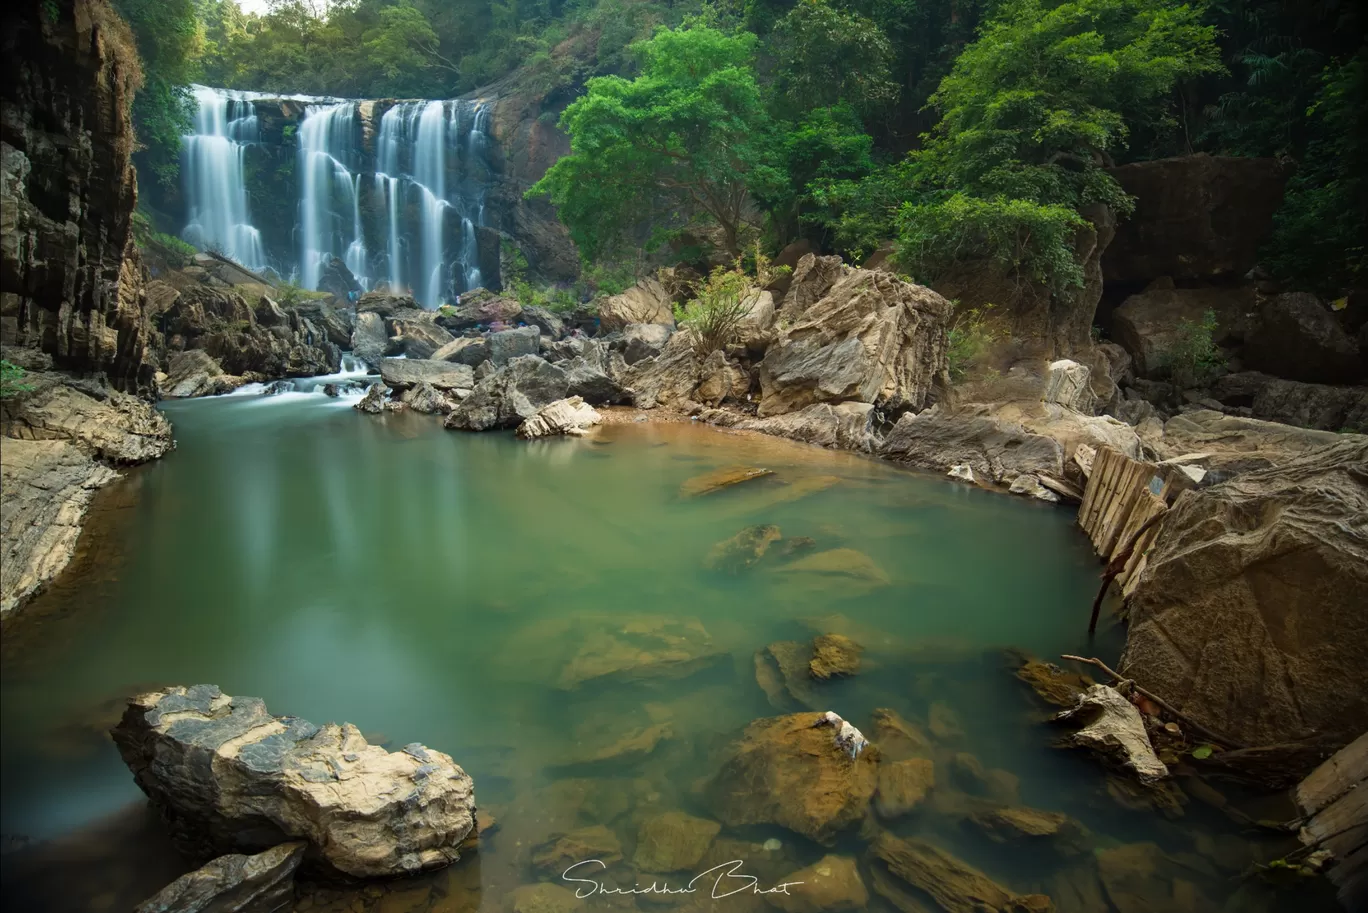 Photo of Sathodi Falls By Shridhu Bhat